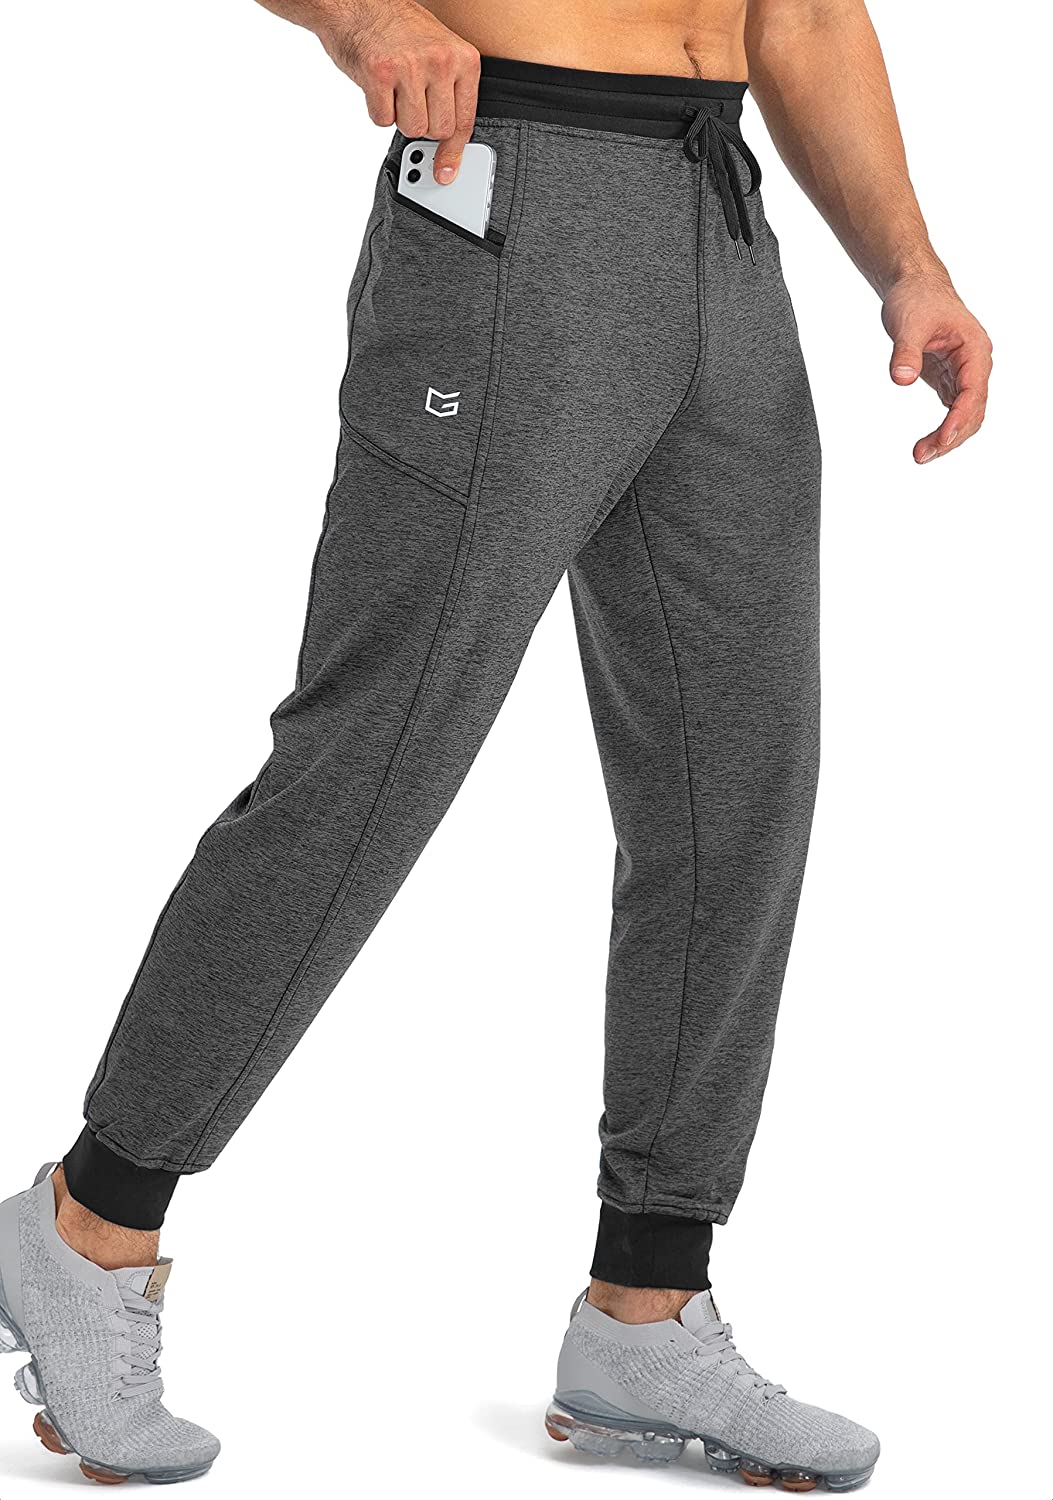 G Gradual Men's Jogger Pants with Zipper Pockets Slim Joggers for